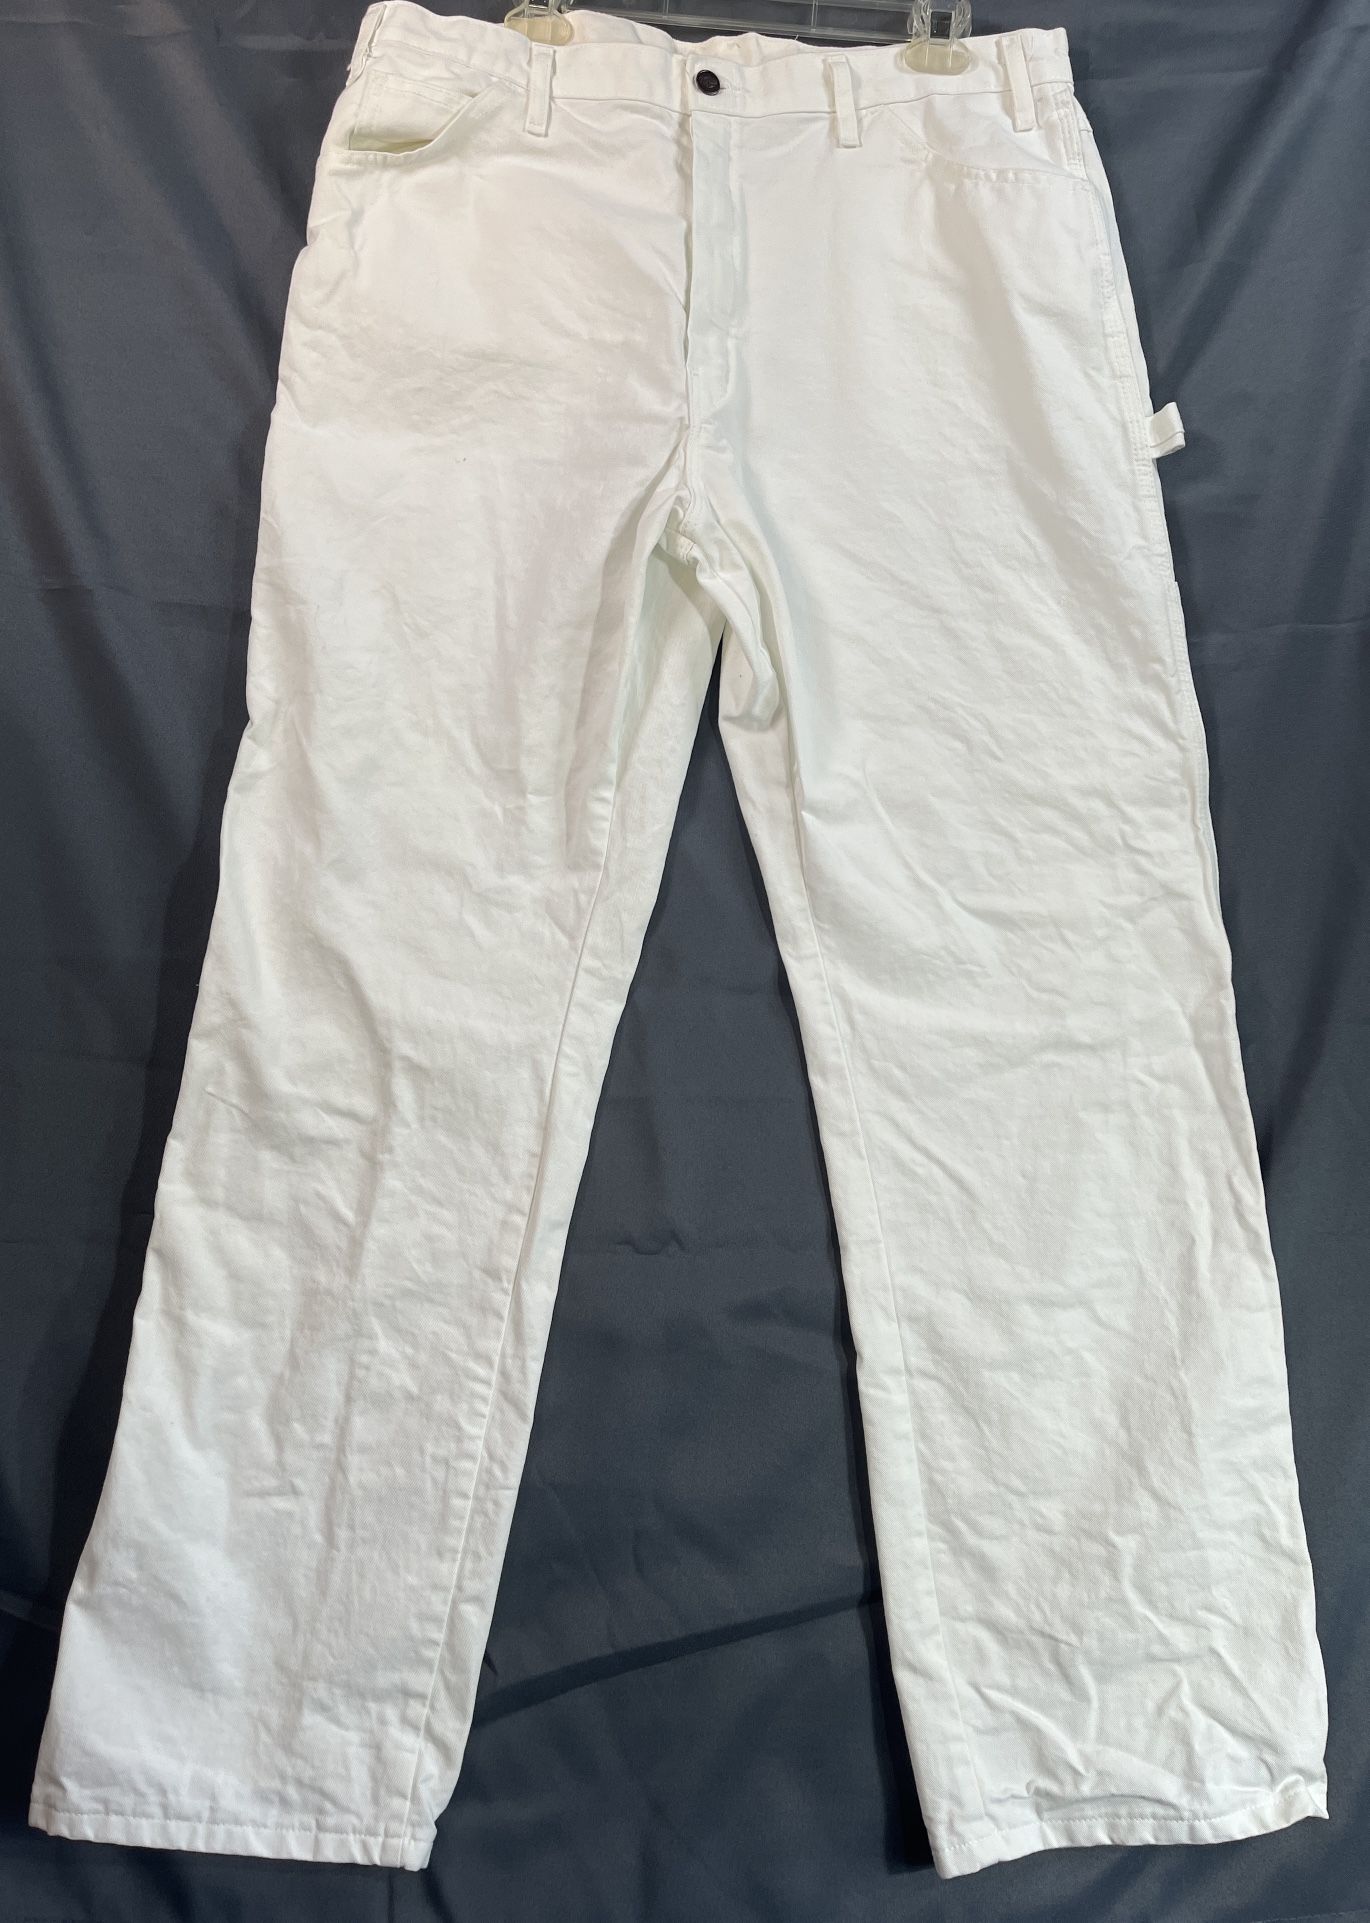 Dickies Painter Carpenter Pants Jeans Mens 38W 32L